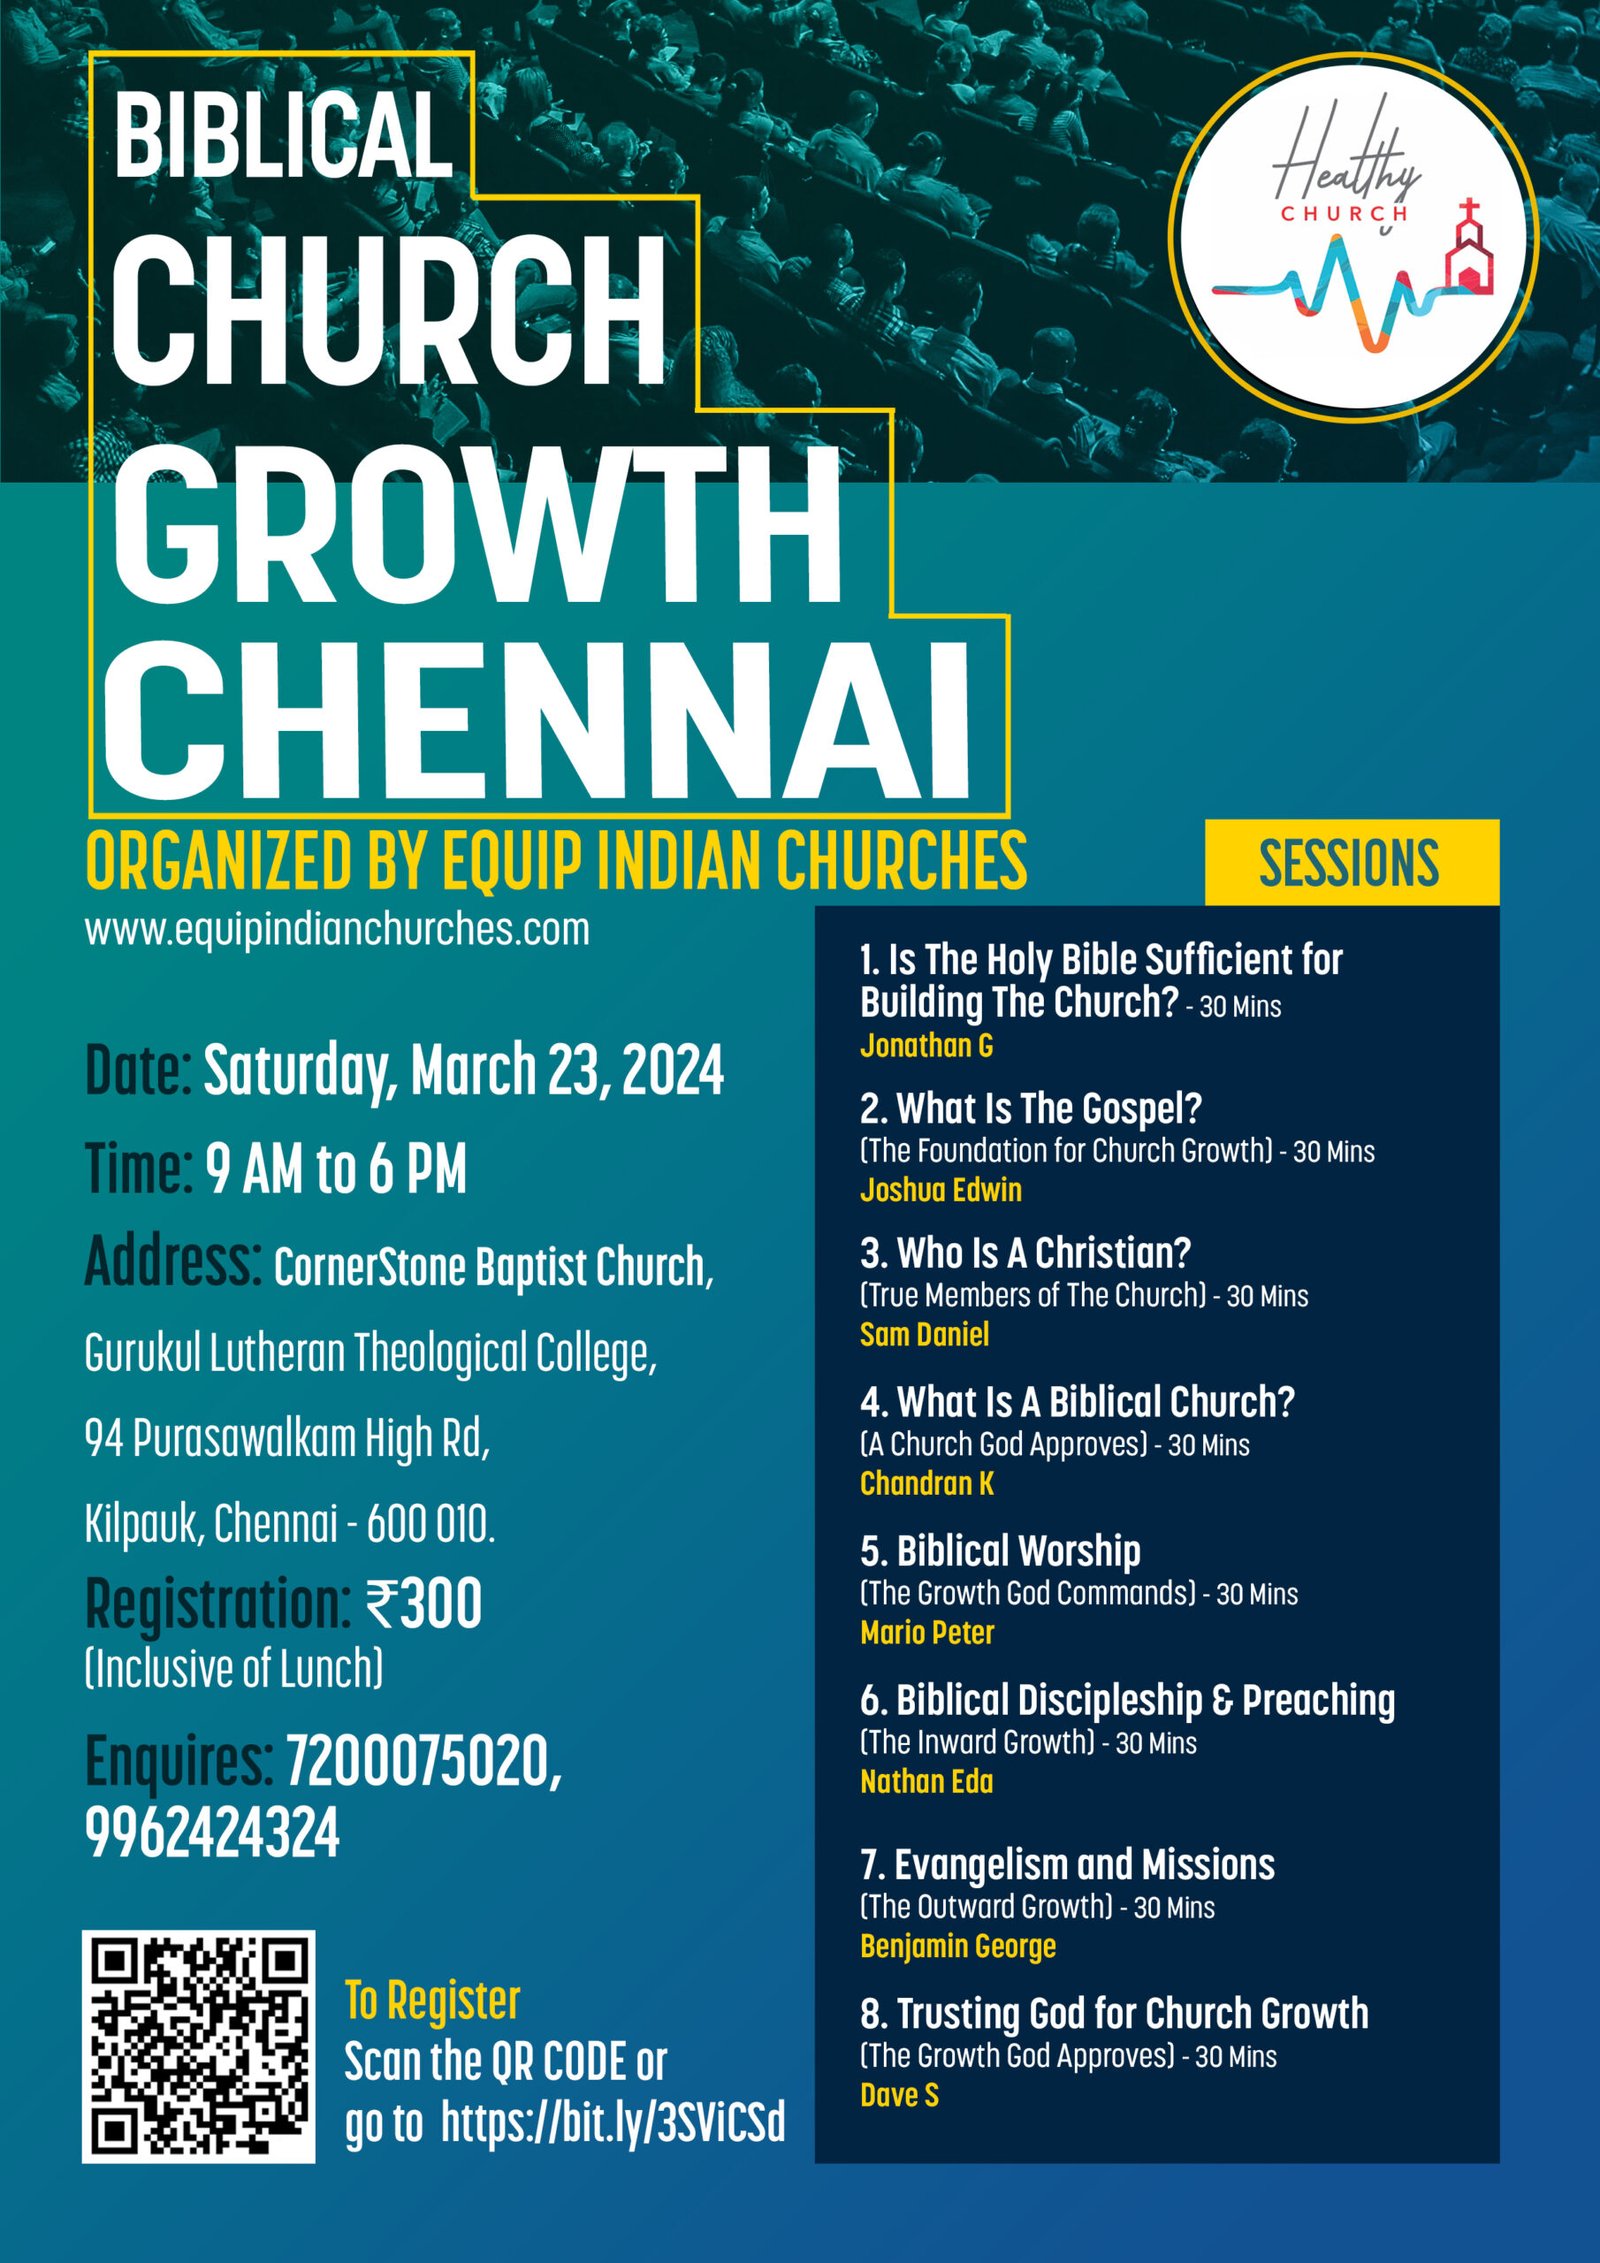 Biblical Church Growth Chennai 2024